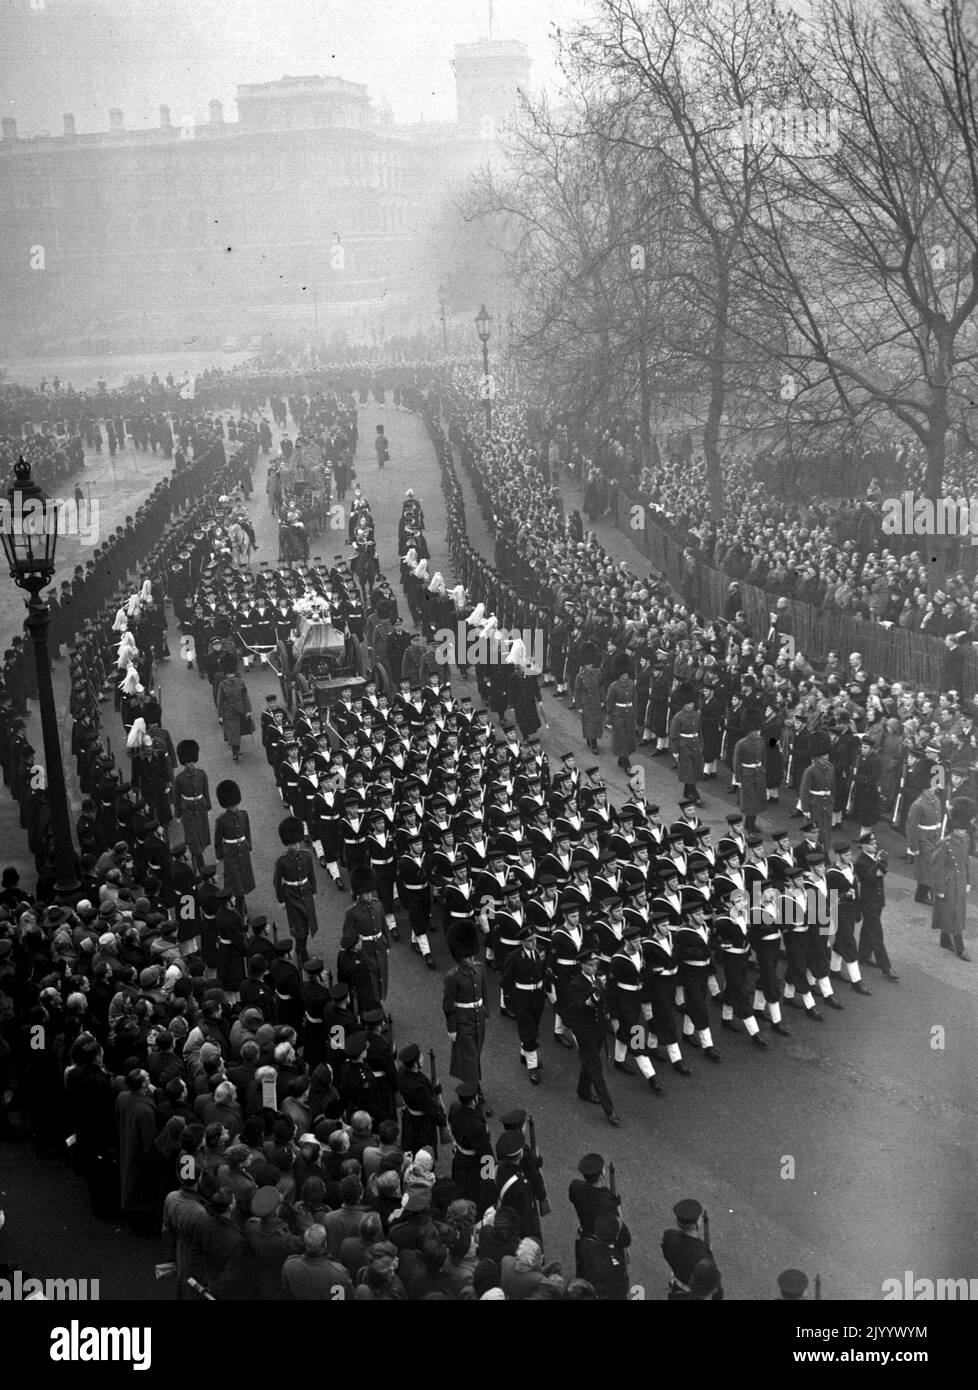 Aktenfoto vom 15/2/1952 des Leichenschauers von König George VI, der von der Horse Guards Parade in die Mall auf dem Weg zur Paddington Station zog. Ausgabedatum: Freitag, 9. September 2022. Stockfoto